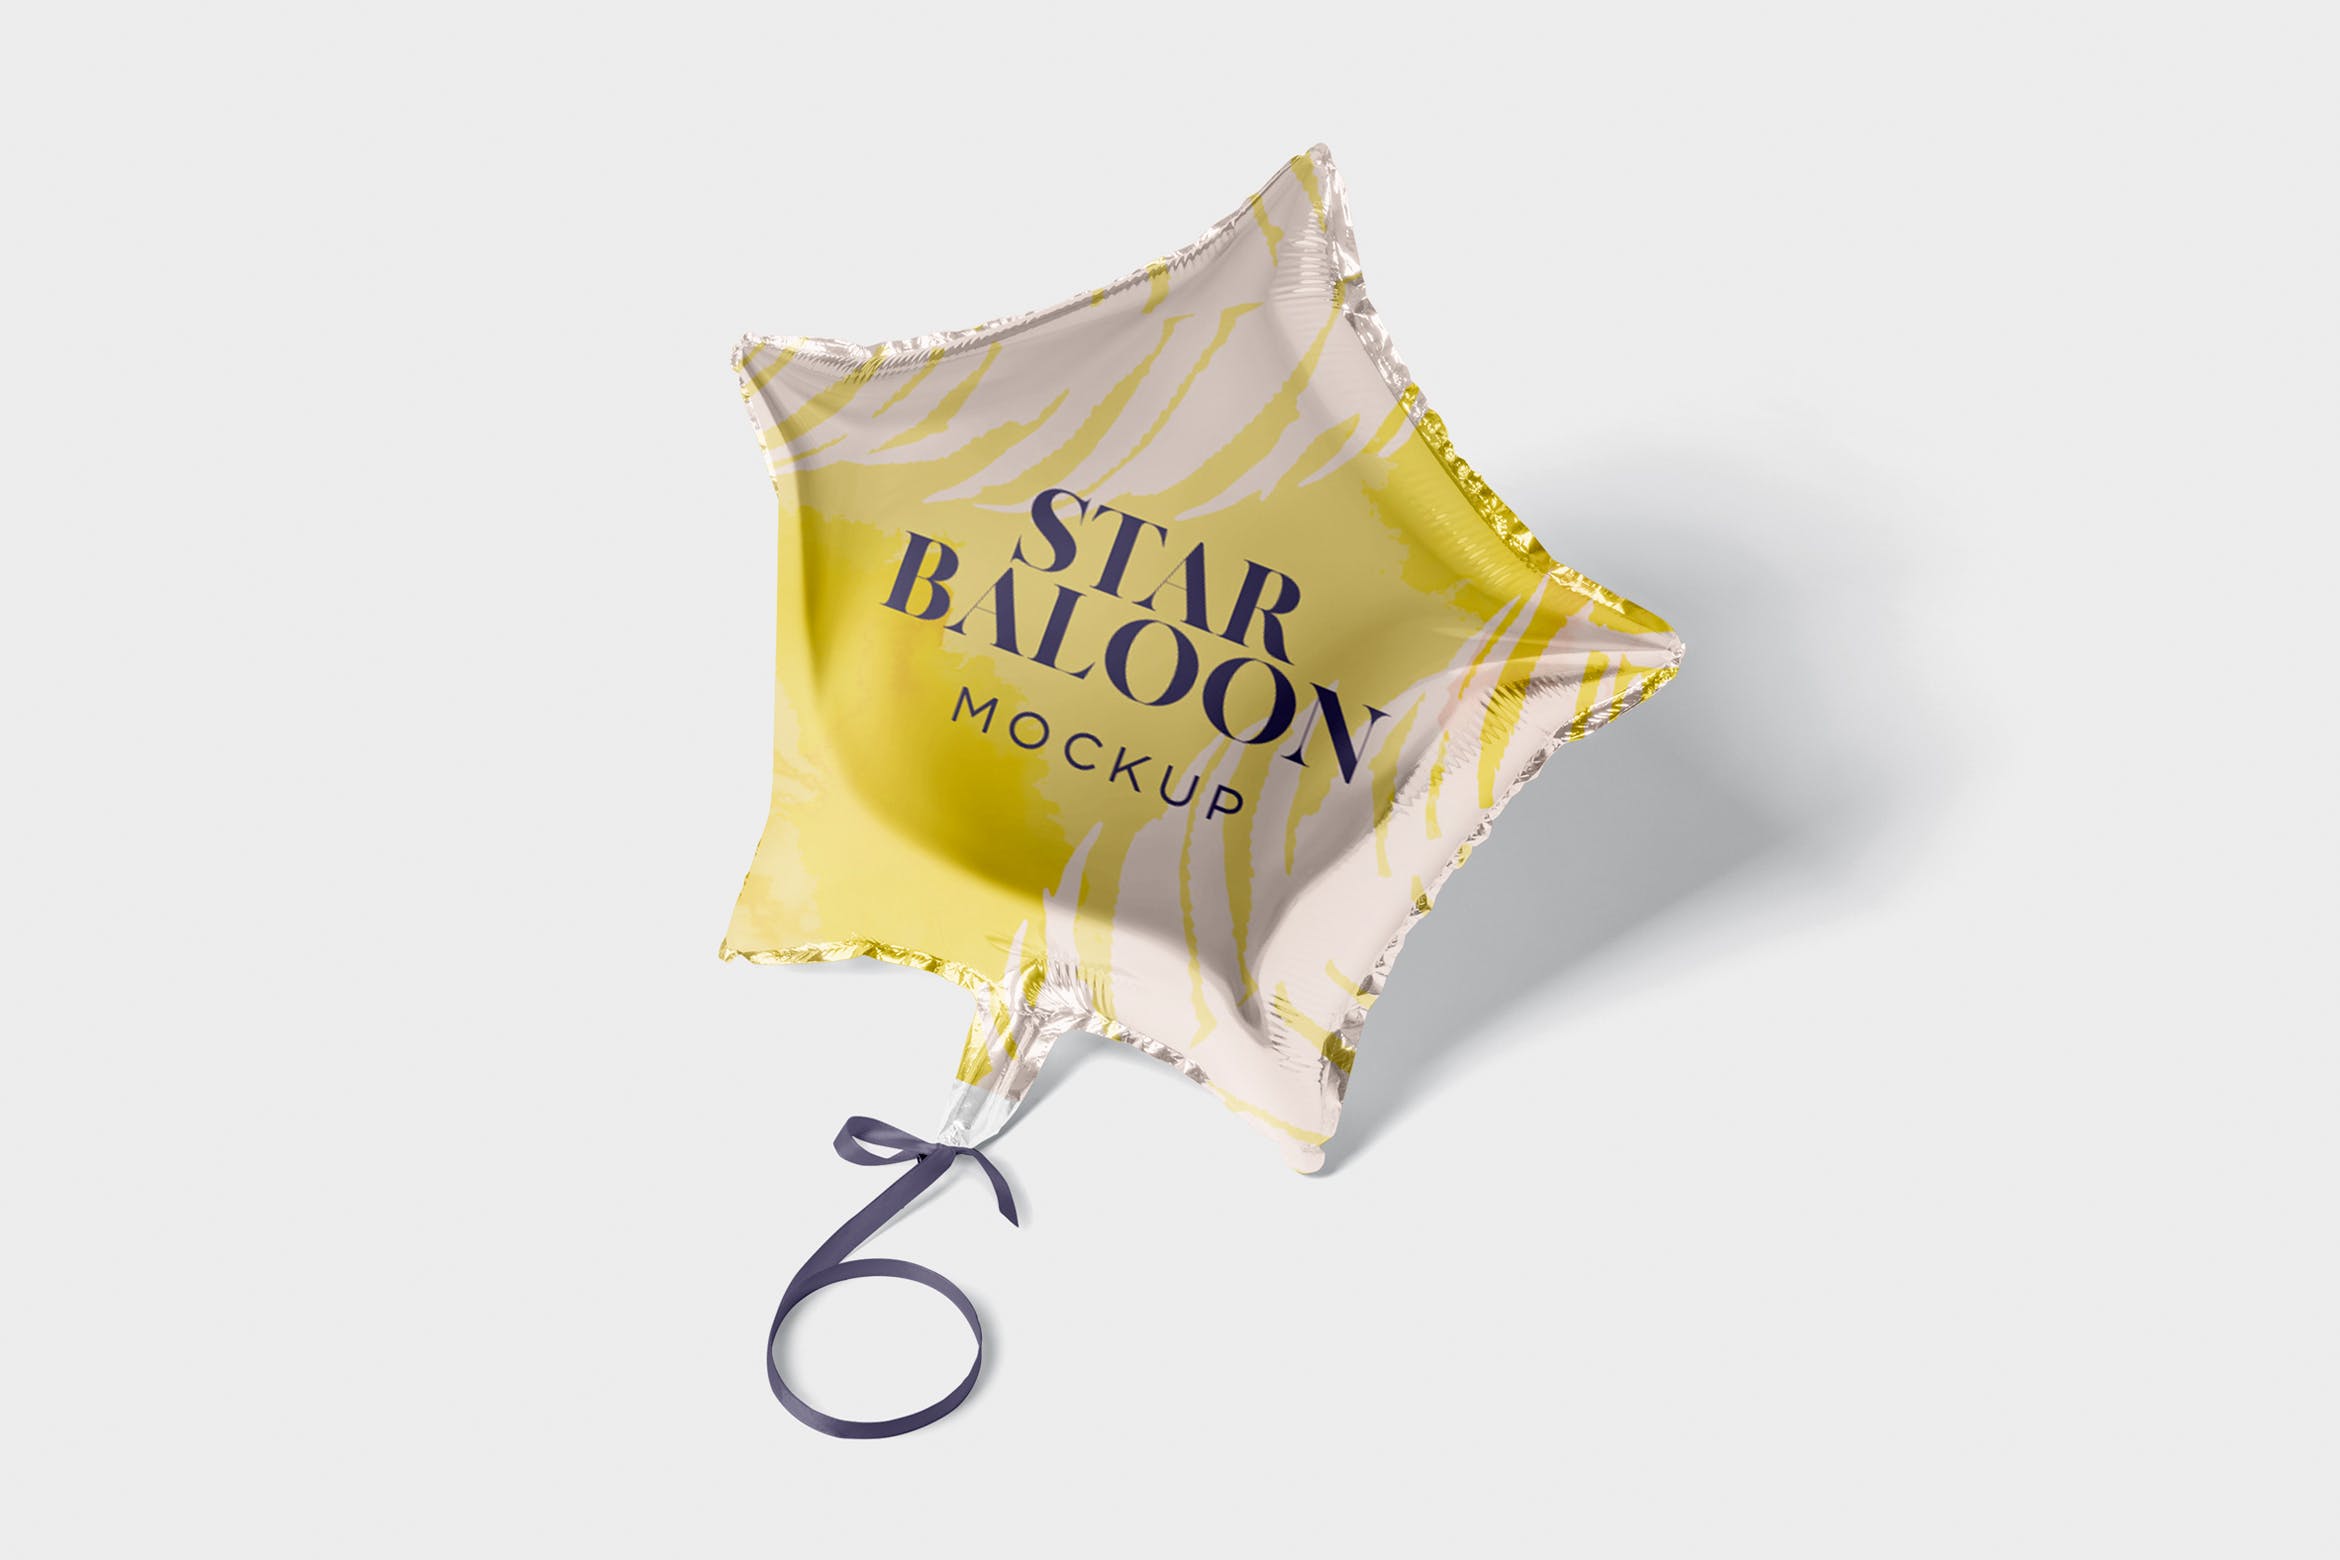 气球星星装饰物图案设计样机第一素材精选模板 Star Balloon Mockup插图